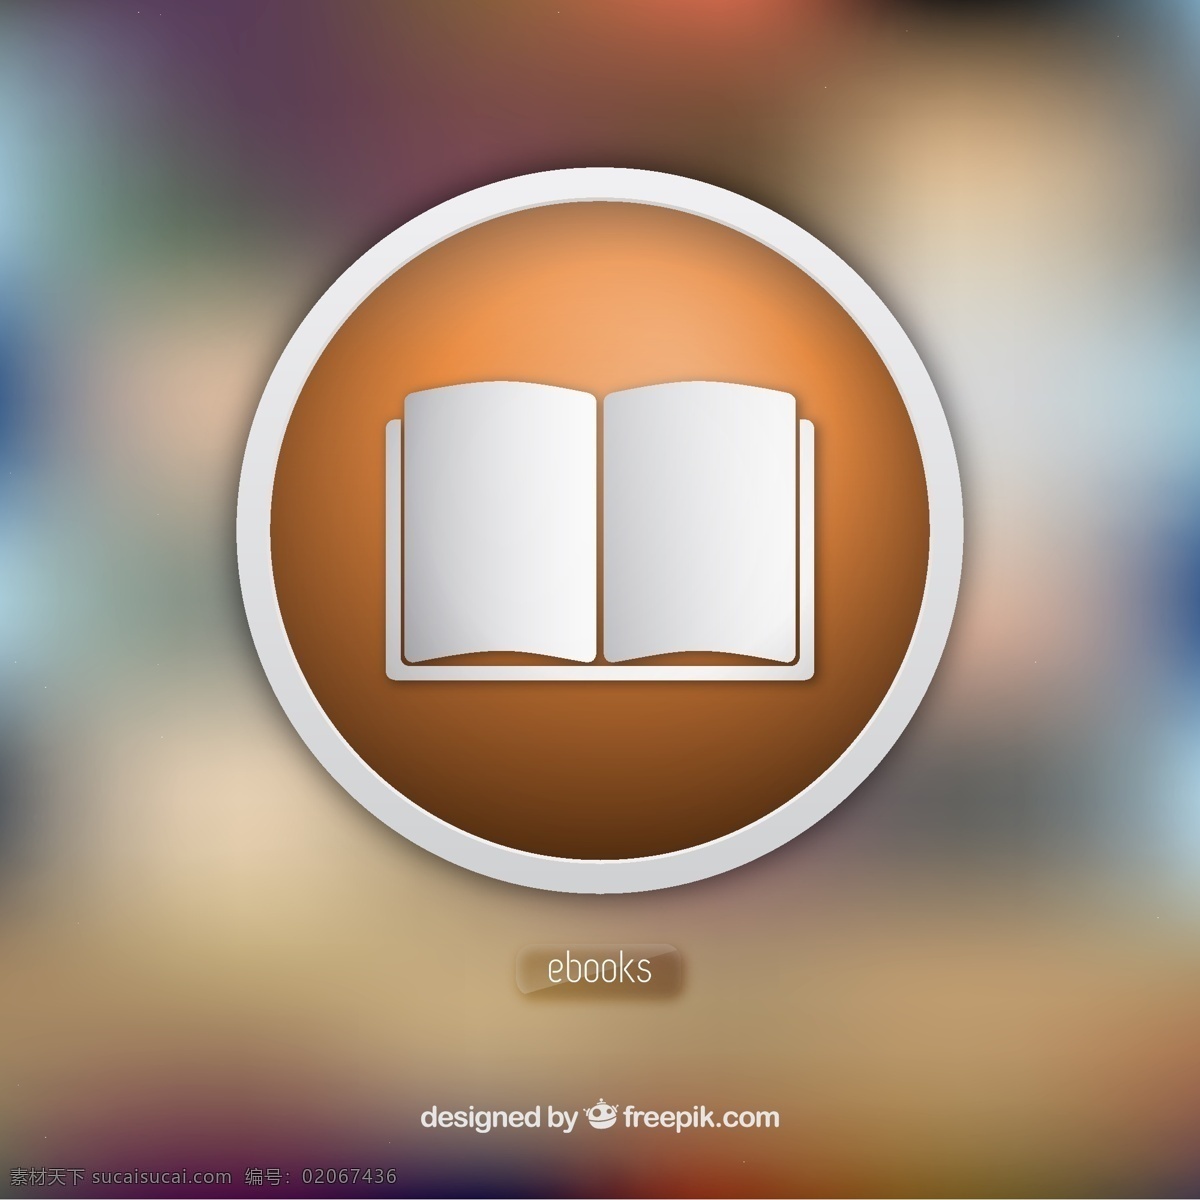 电子书 应用程序 书籍 图标 技术 按钮 苹果 图书馆 阅读 书籍图标 设备 应用程序图标 灰色